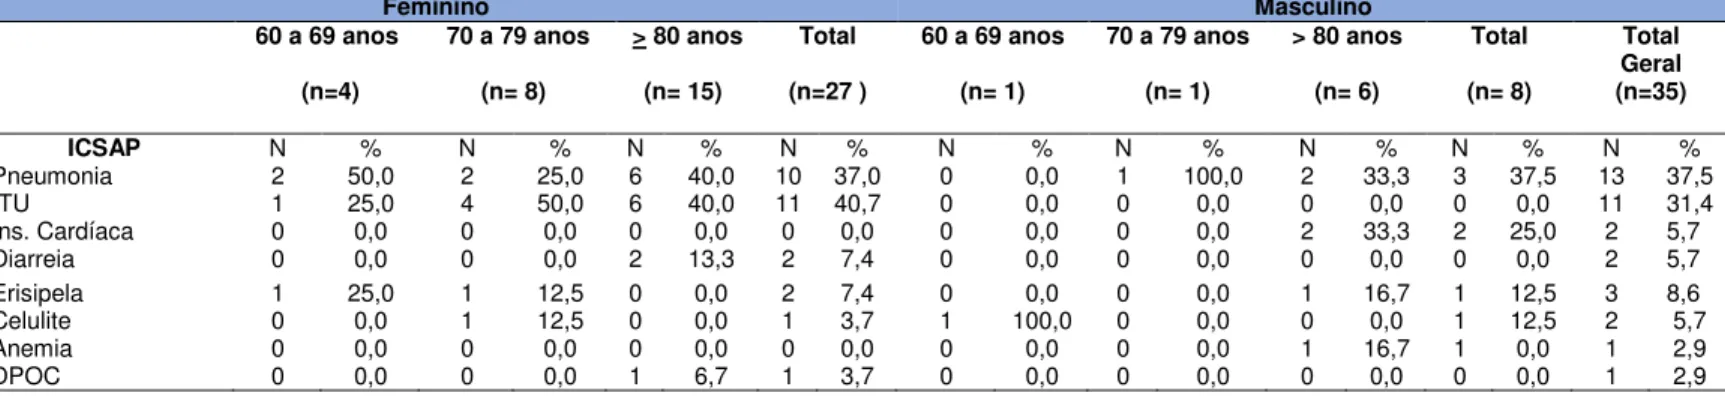 Tabela  7  –  Diagnósticos  dos  Idosos  de  acordo  com  ICSAP  segundo  sexo e idade,  São Paulo, 2014 